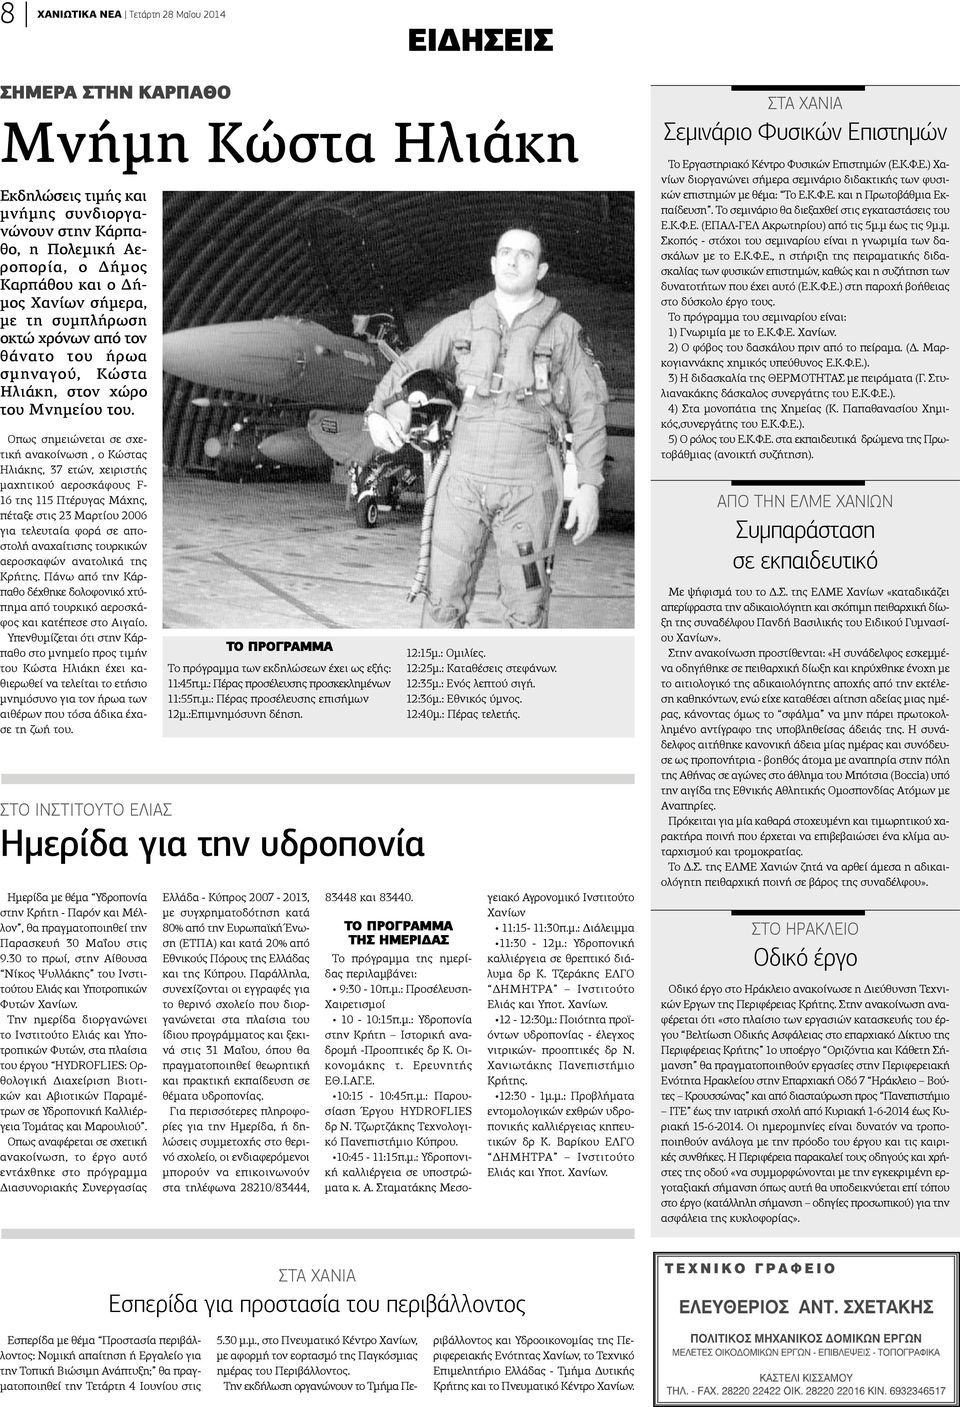 Οπως σημειώνεται σε σχετική ανακοίνωση, ο Κώστας Ηλιάκης, 37 ετών, χειριστής μαχητικού αεροσκάφους F- 16 της 115 Πτέρυγας Μάχης, πέταξε στις 23 Μαρτίου 2006 για τελευταία φορά σε αποστολή αναχαίτισης